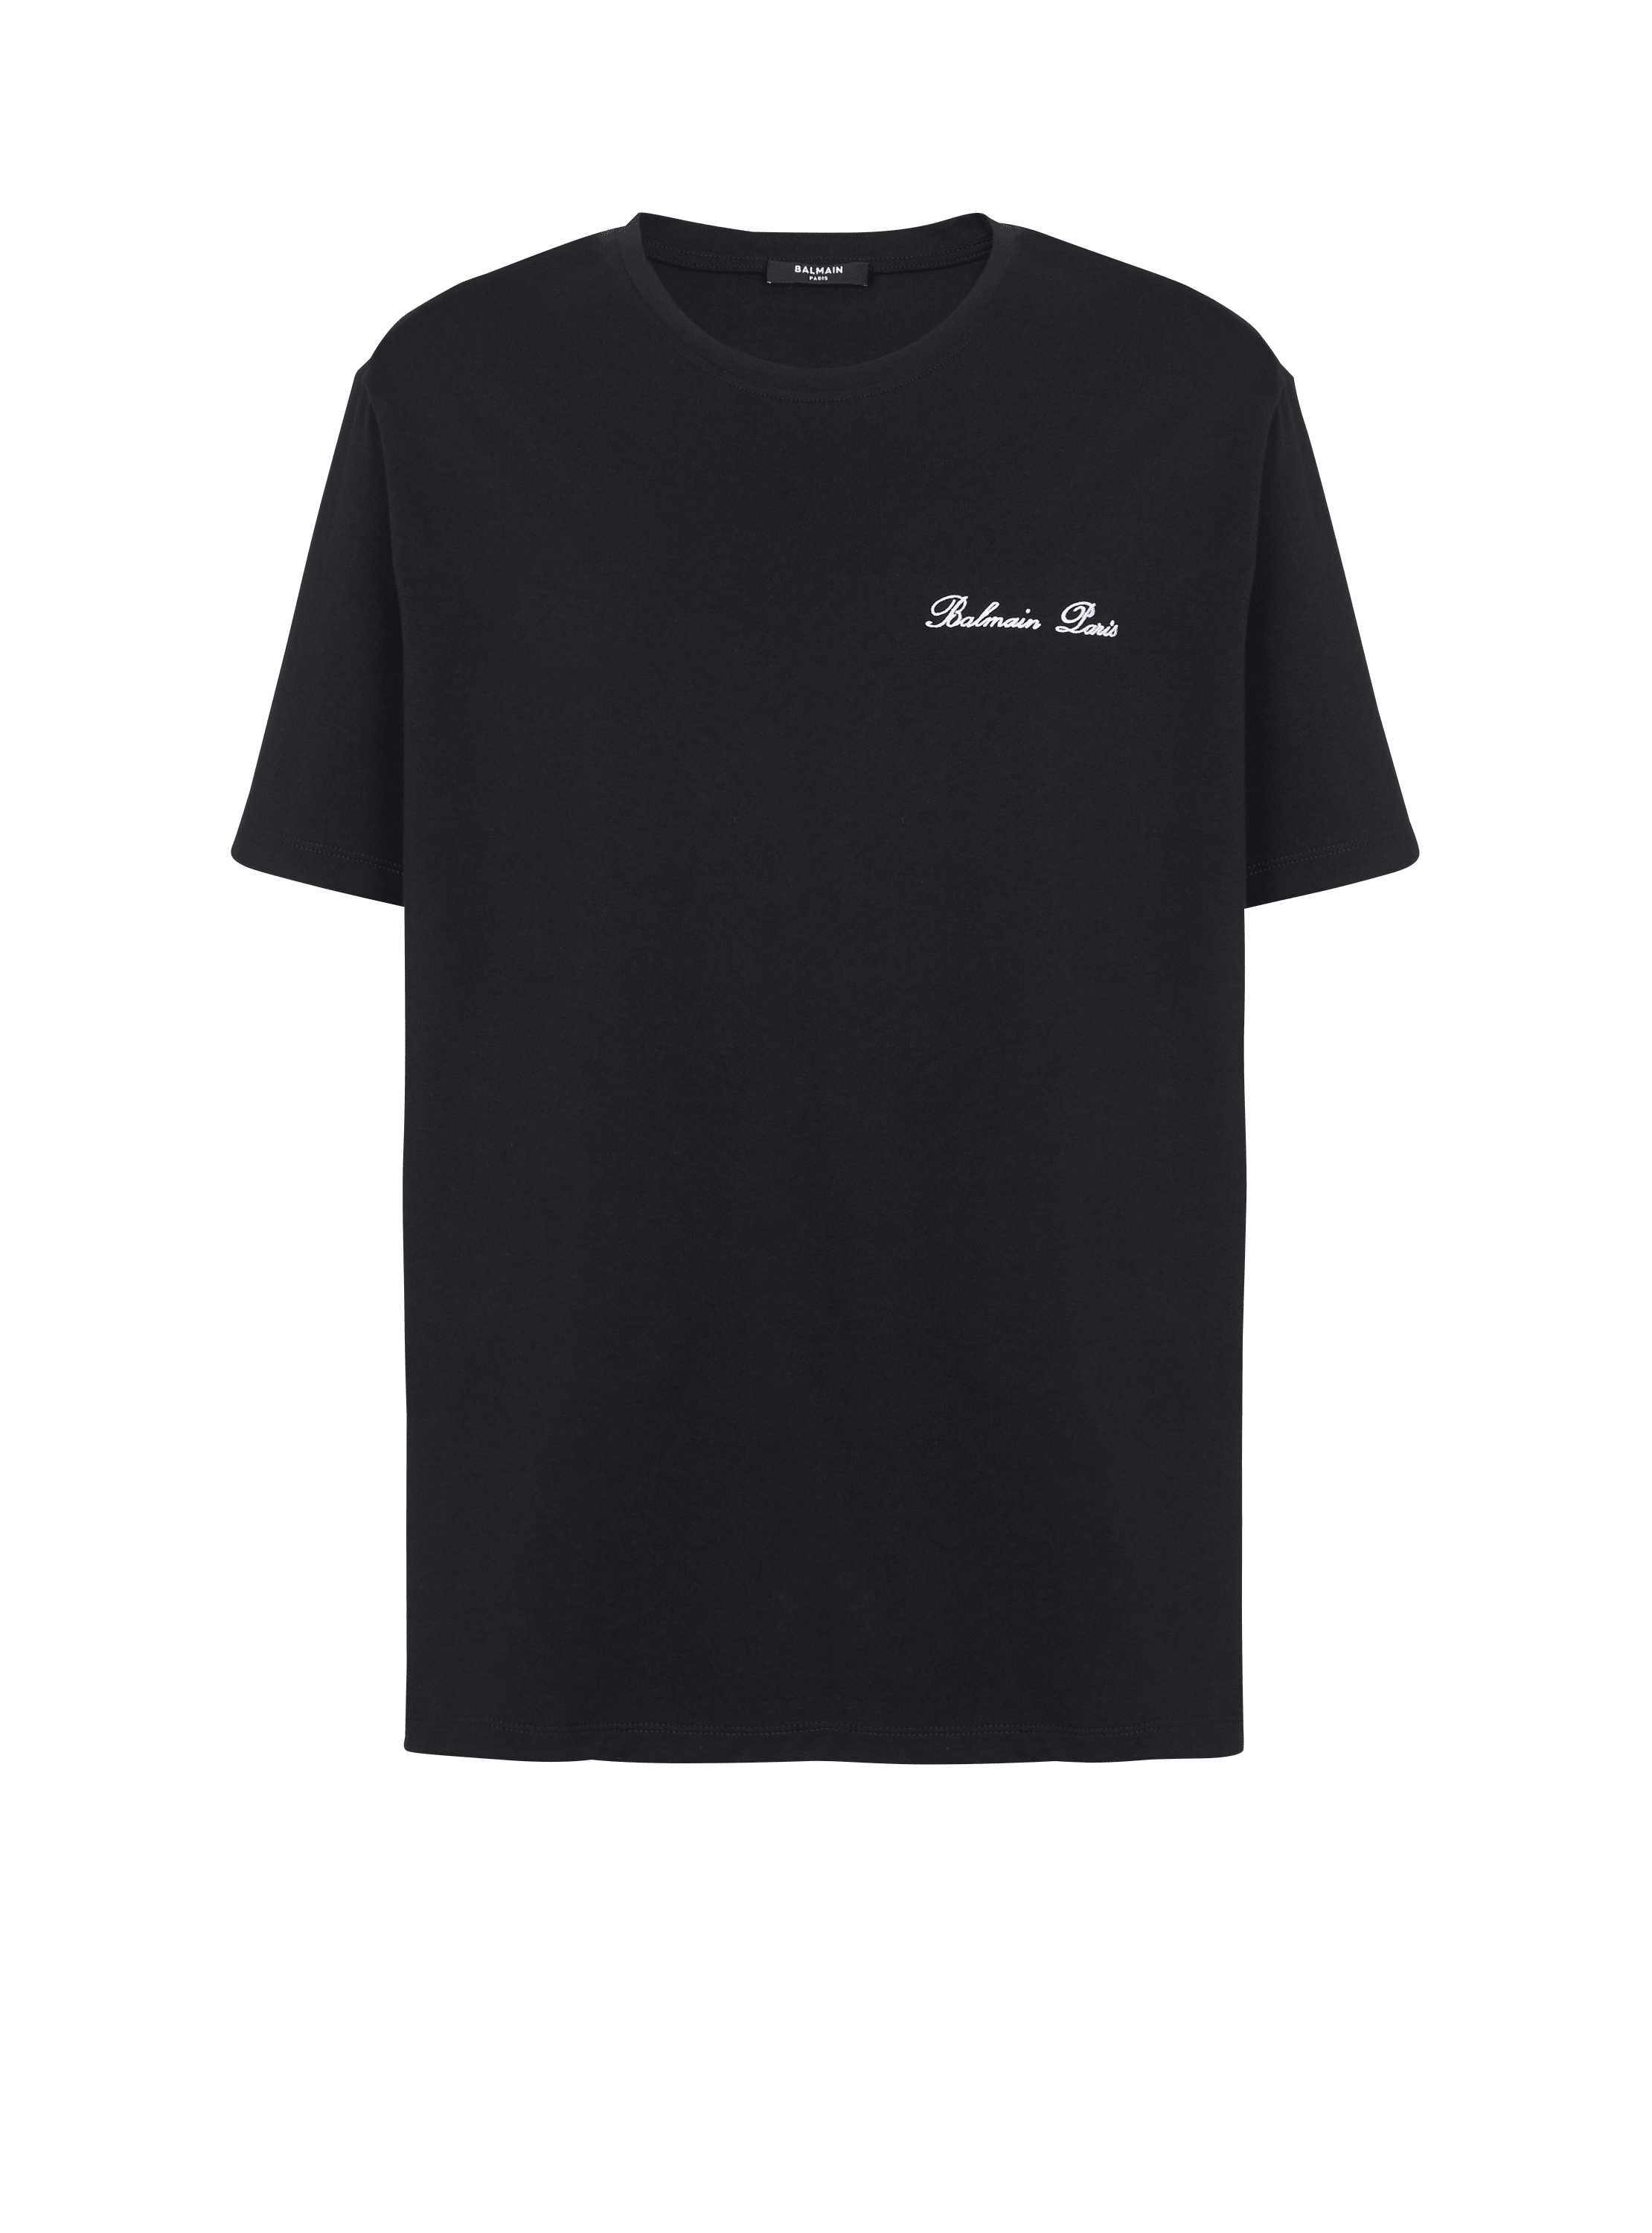 Balmain signature T-shirt black - Men | BALMAIN